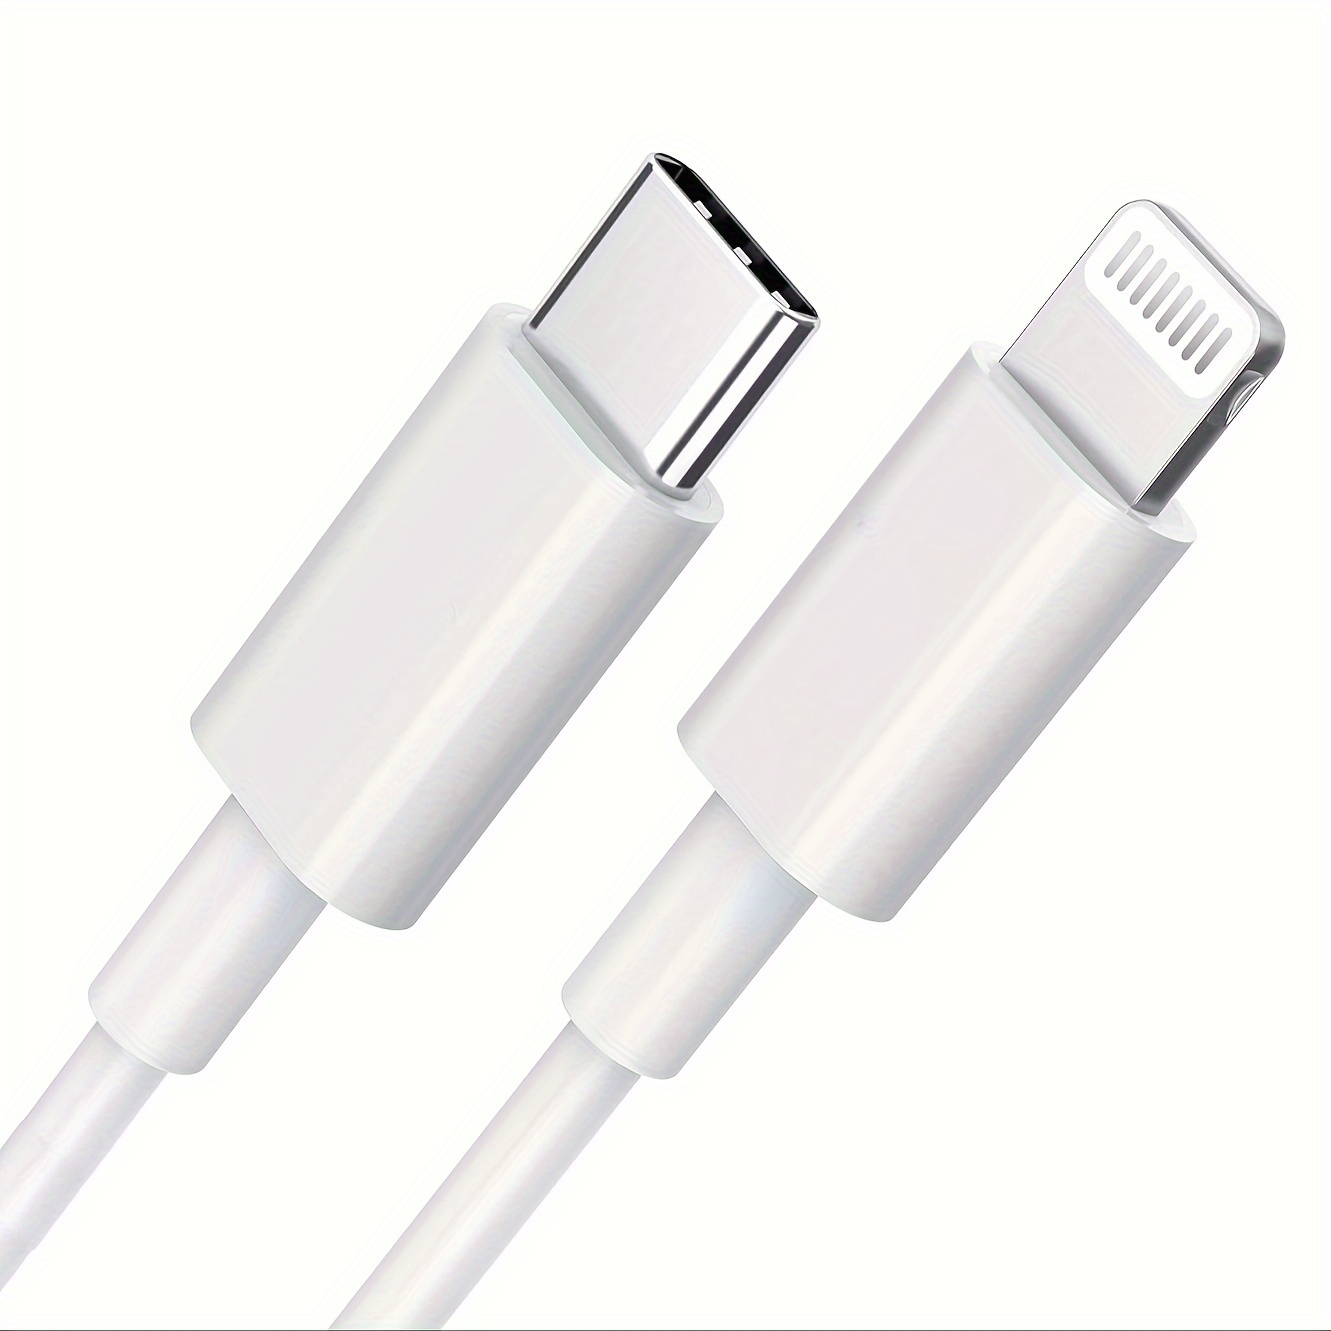  Adaptador USB C hembra a USB macho, paquete de 4 unidades  (varios colores) tipo A a USB C, convertidor de cargador compatible con  iPhone 14, 13, 12, 11 Mini Pro Max